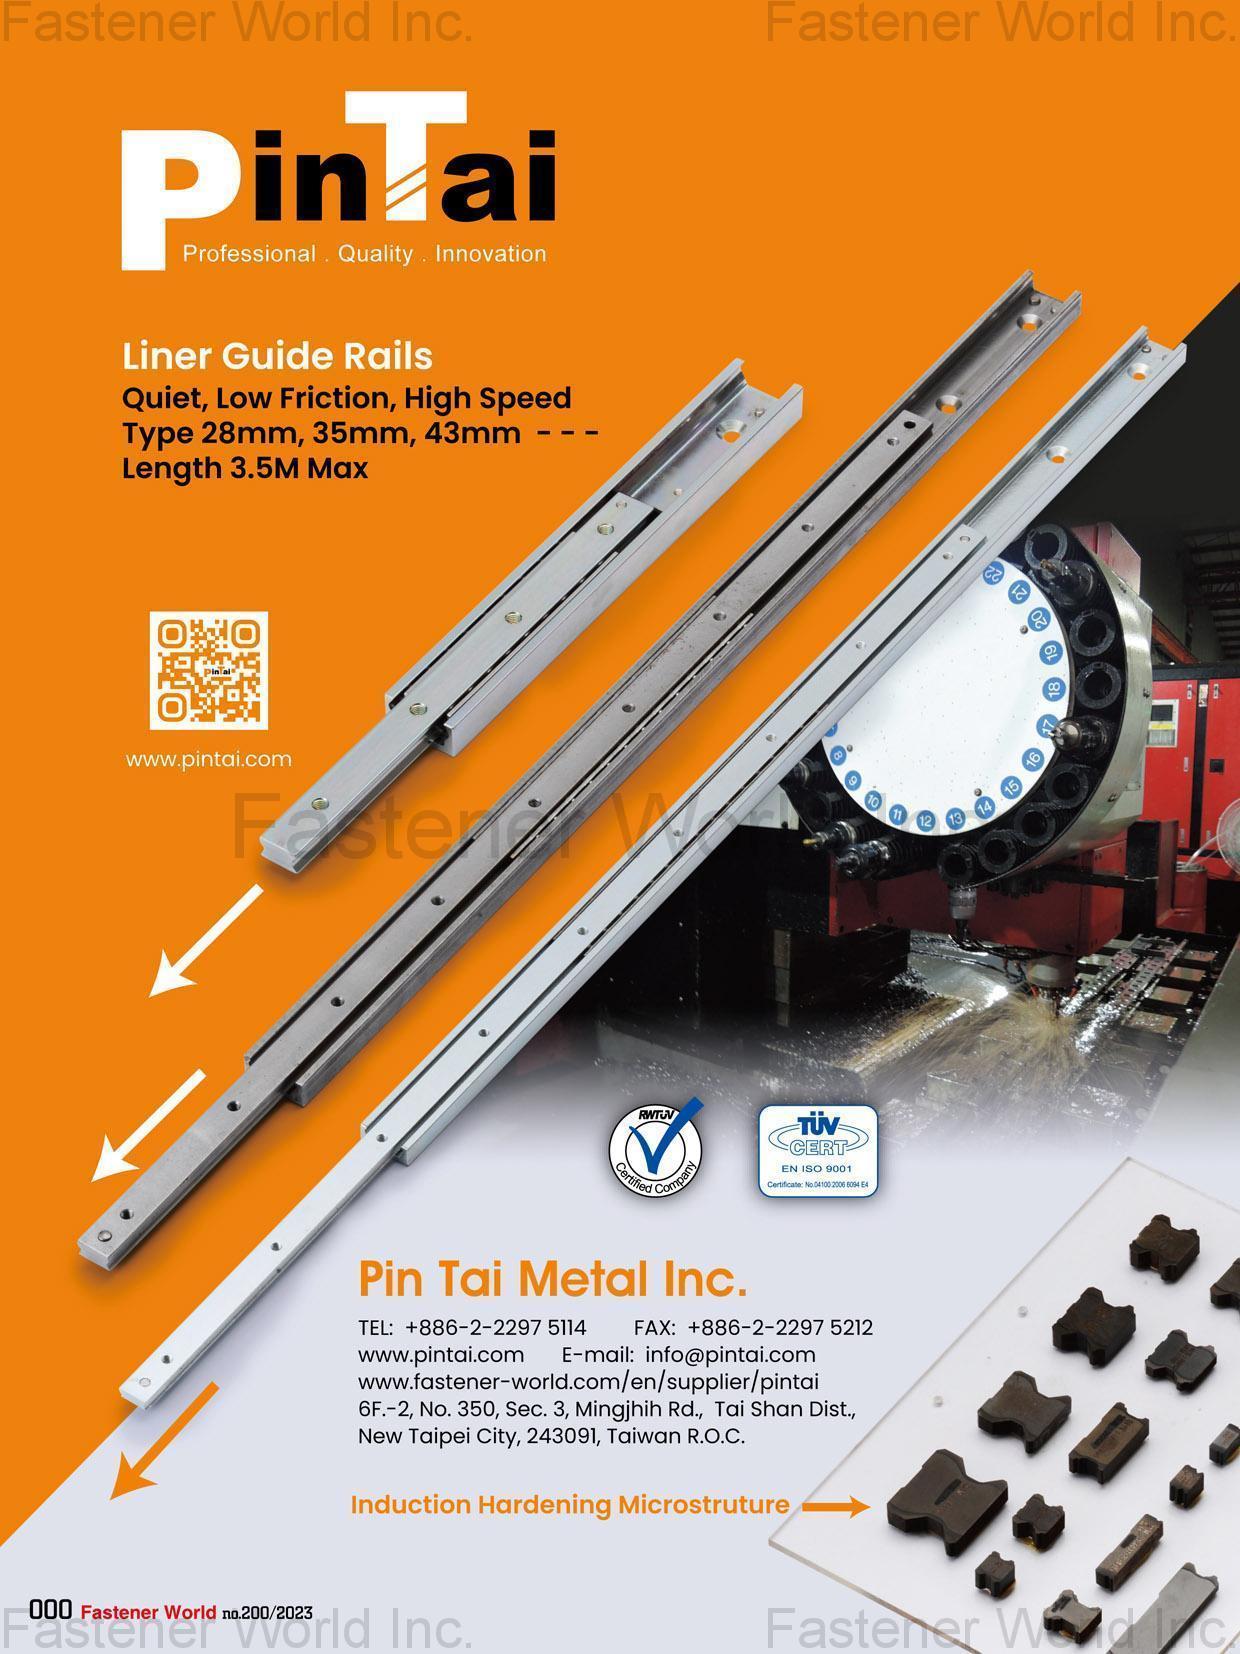 PIN TAI METAL INC. , Liner Guide Rails